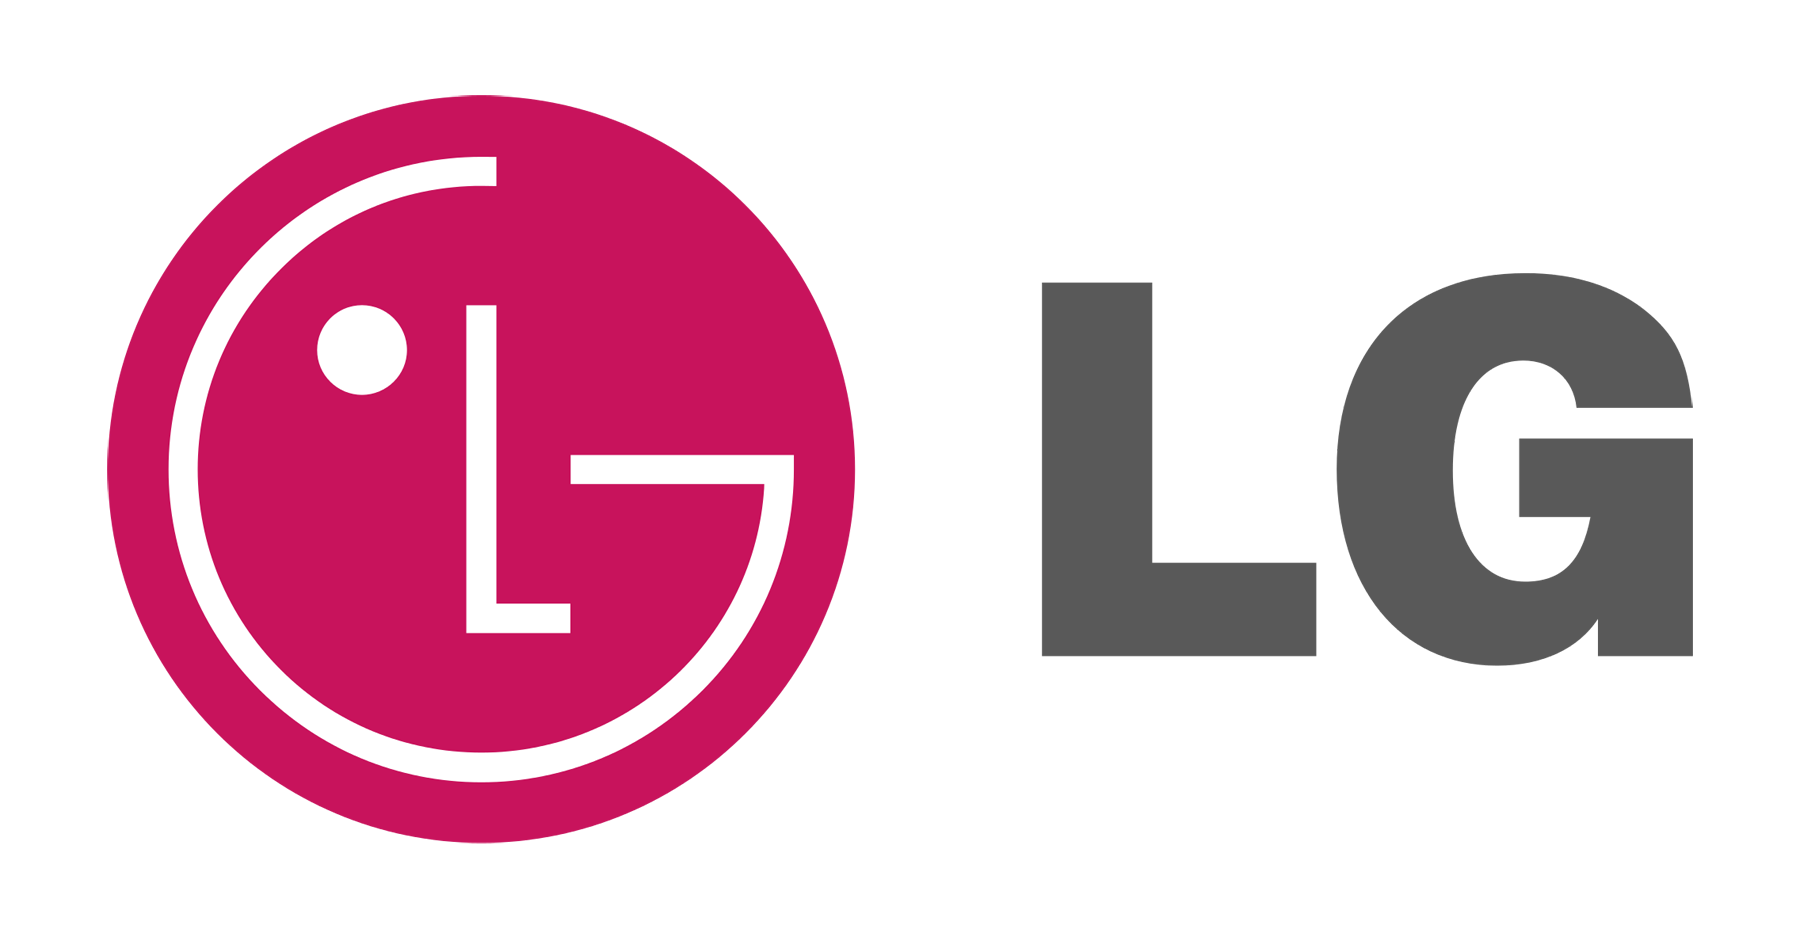 LG-Logo